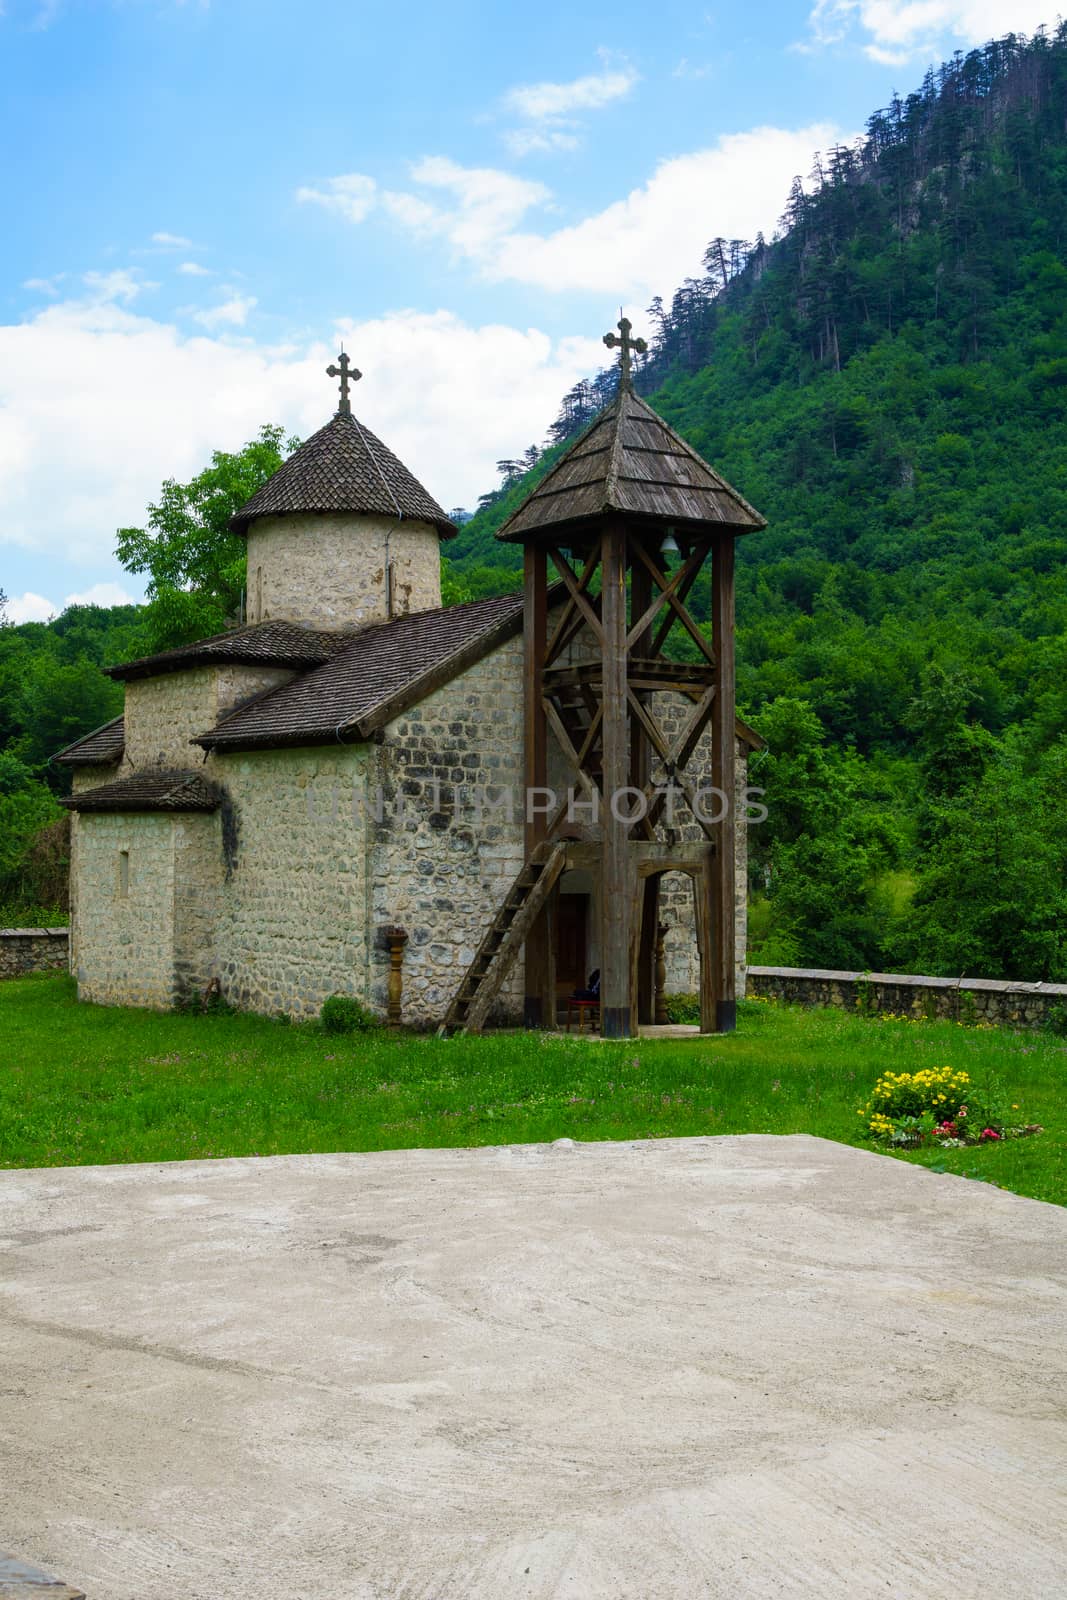 The Dobrilovina Monastery by RnDmS